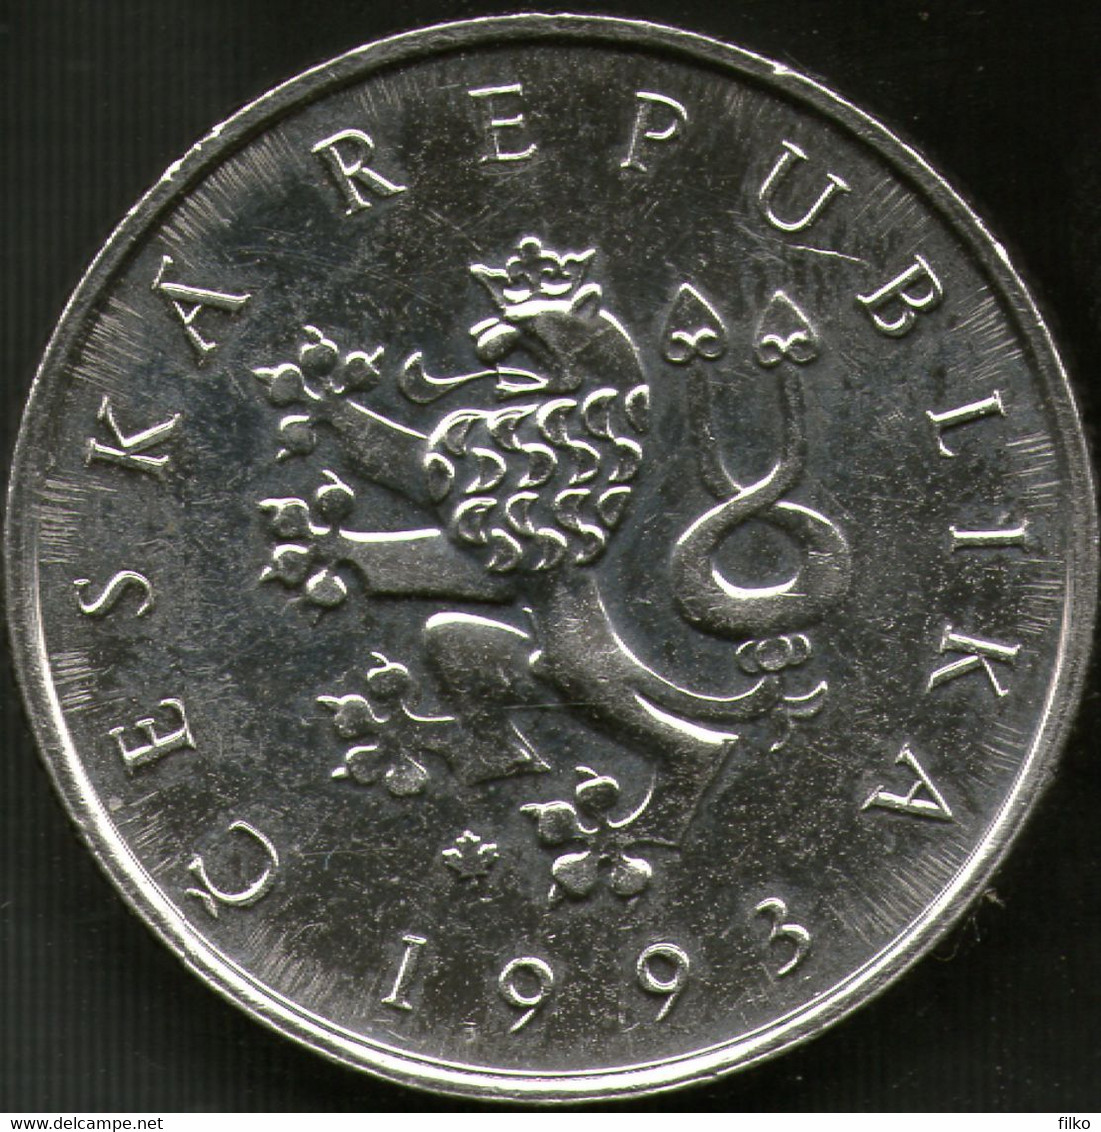 Czech Republic,1 Korun 1993,error Shown On Coin Scan As Scan - Czech Republic